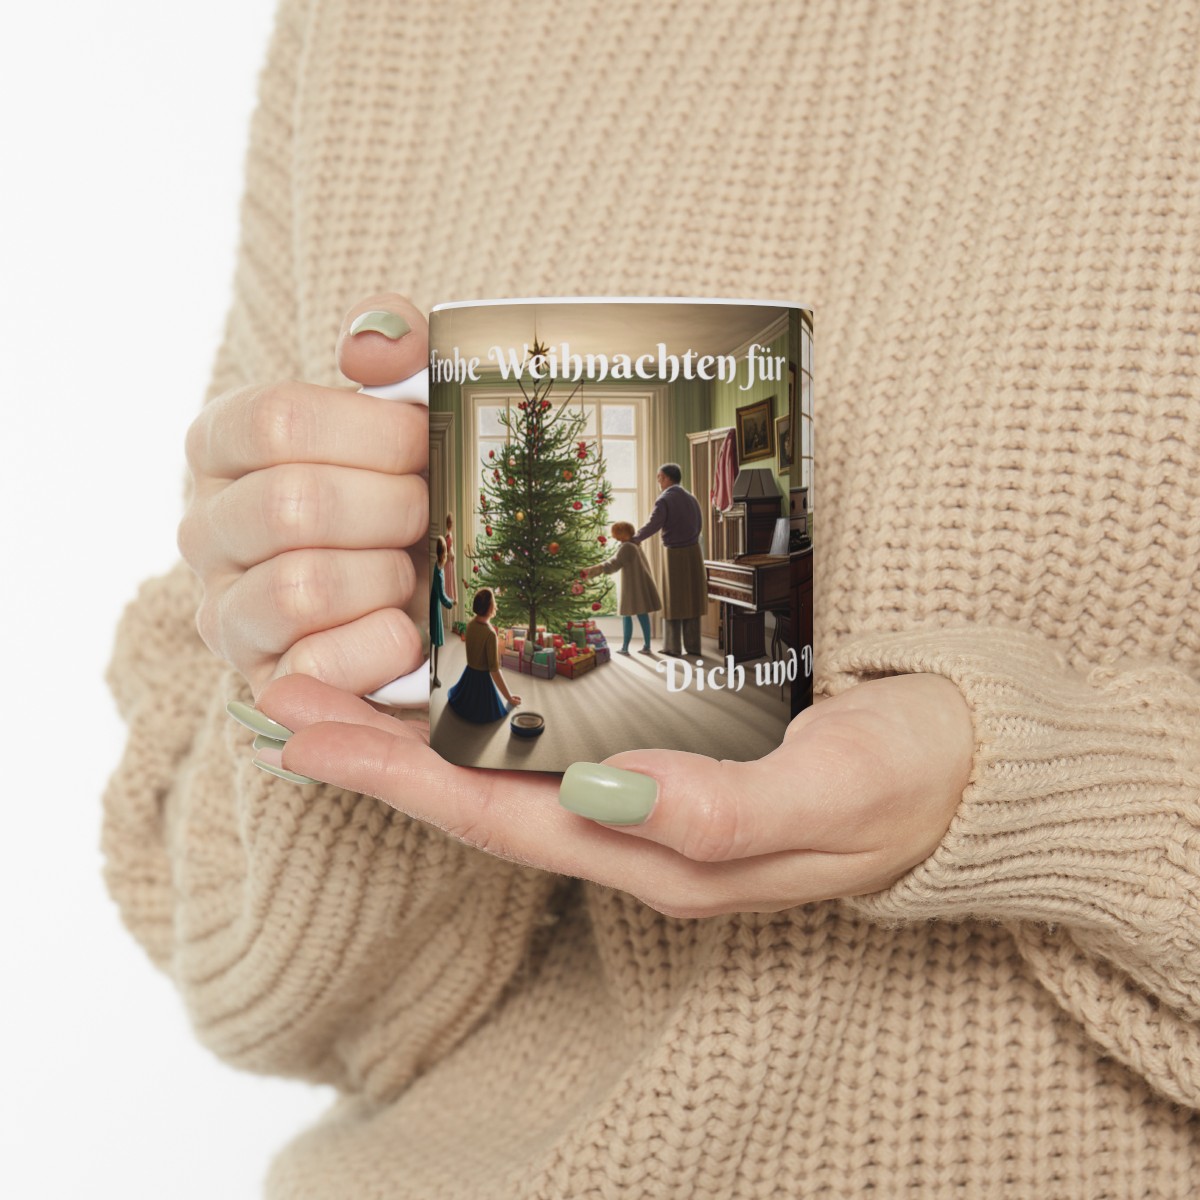 Frohe Weihnachten für Dich und Deine ganze Familie! - Ceramic Mug 11oz product thumbnail image